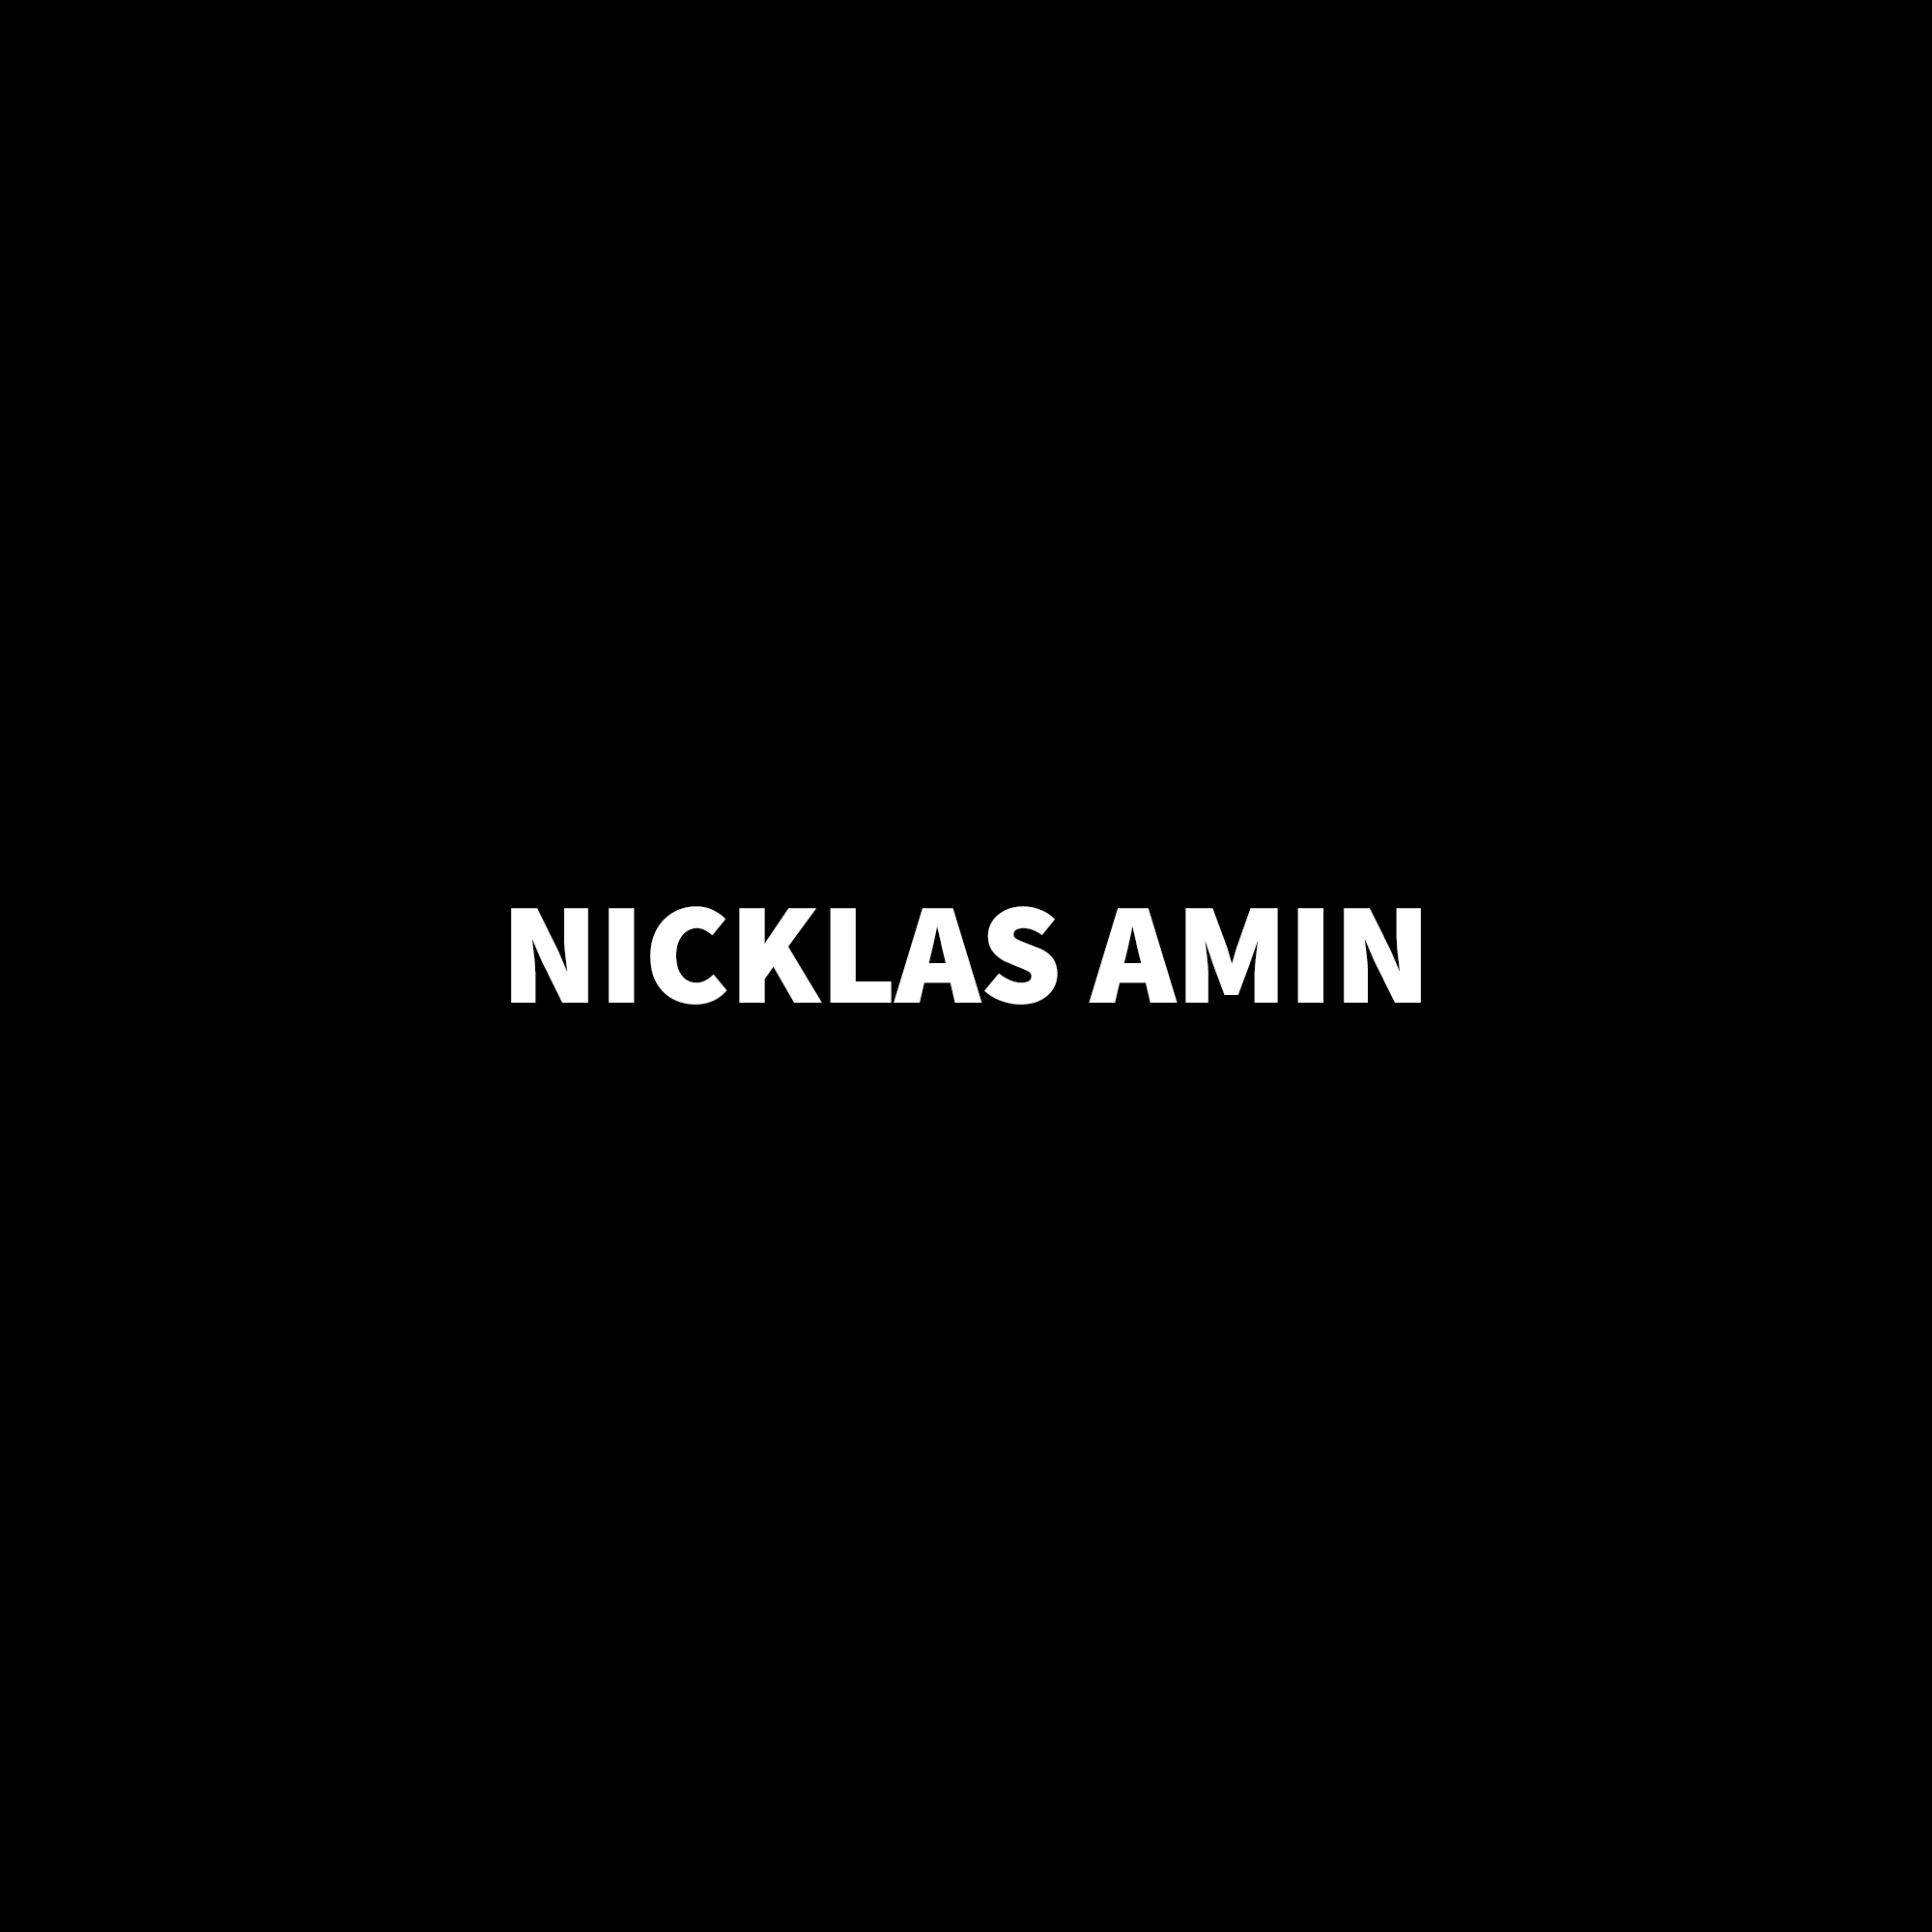 Nicklas Amin